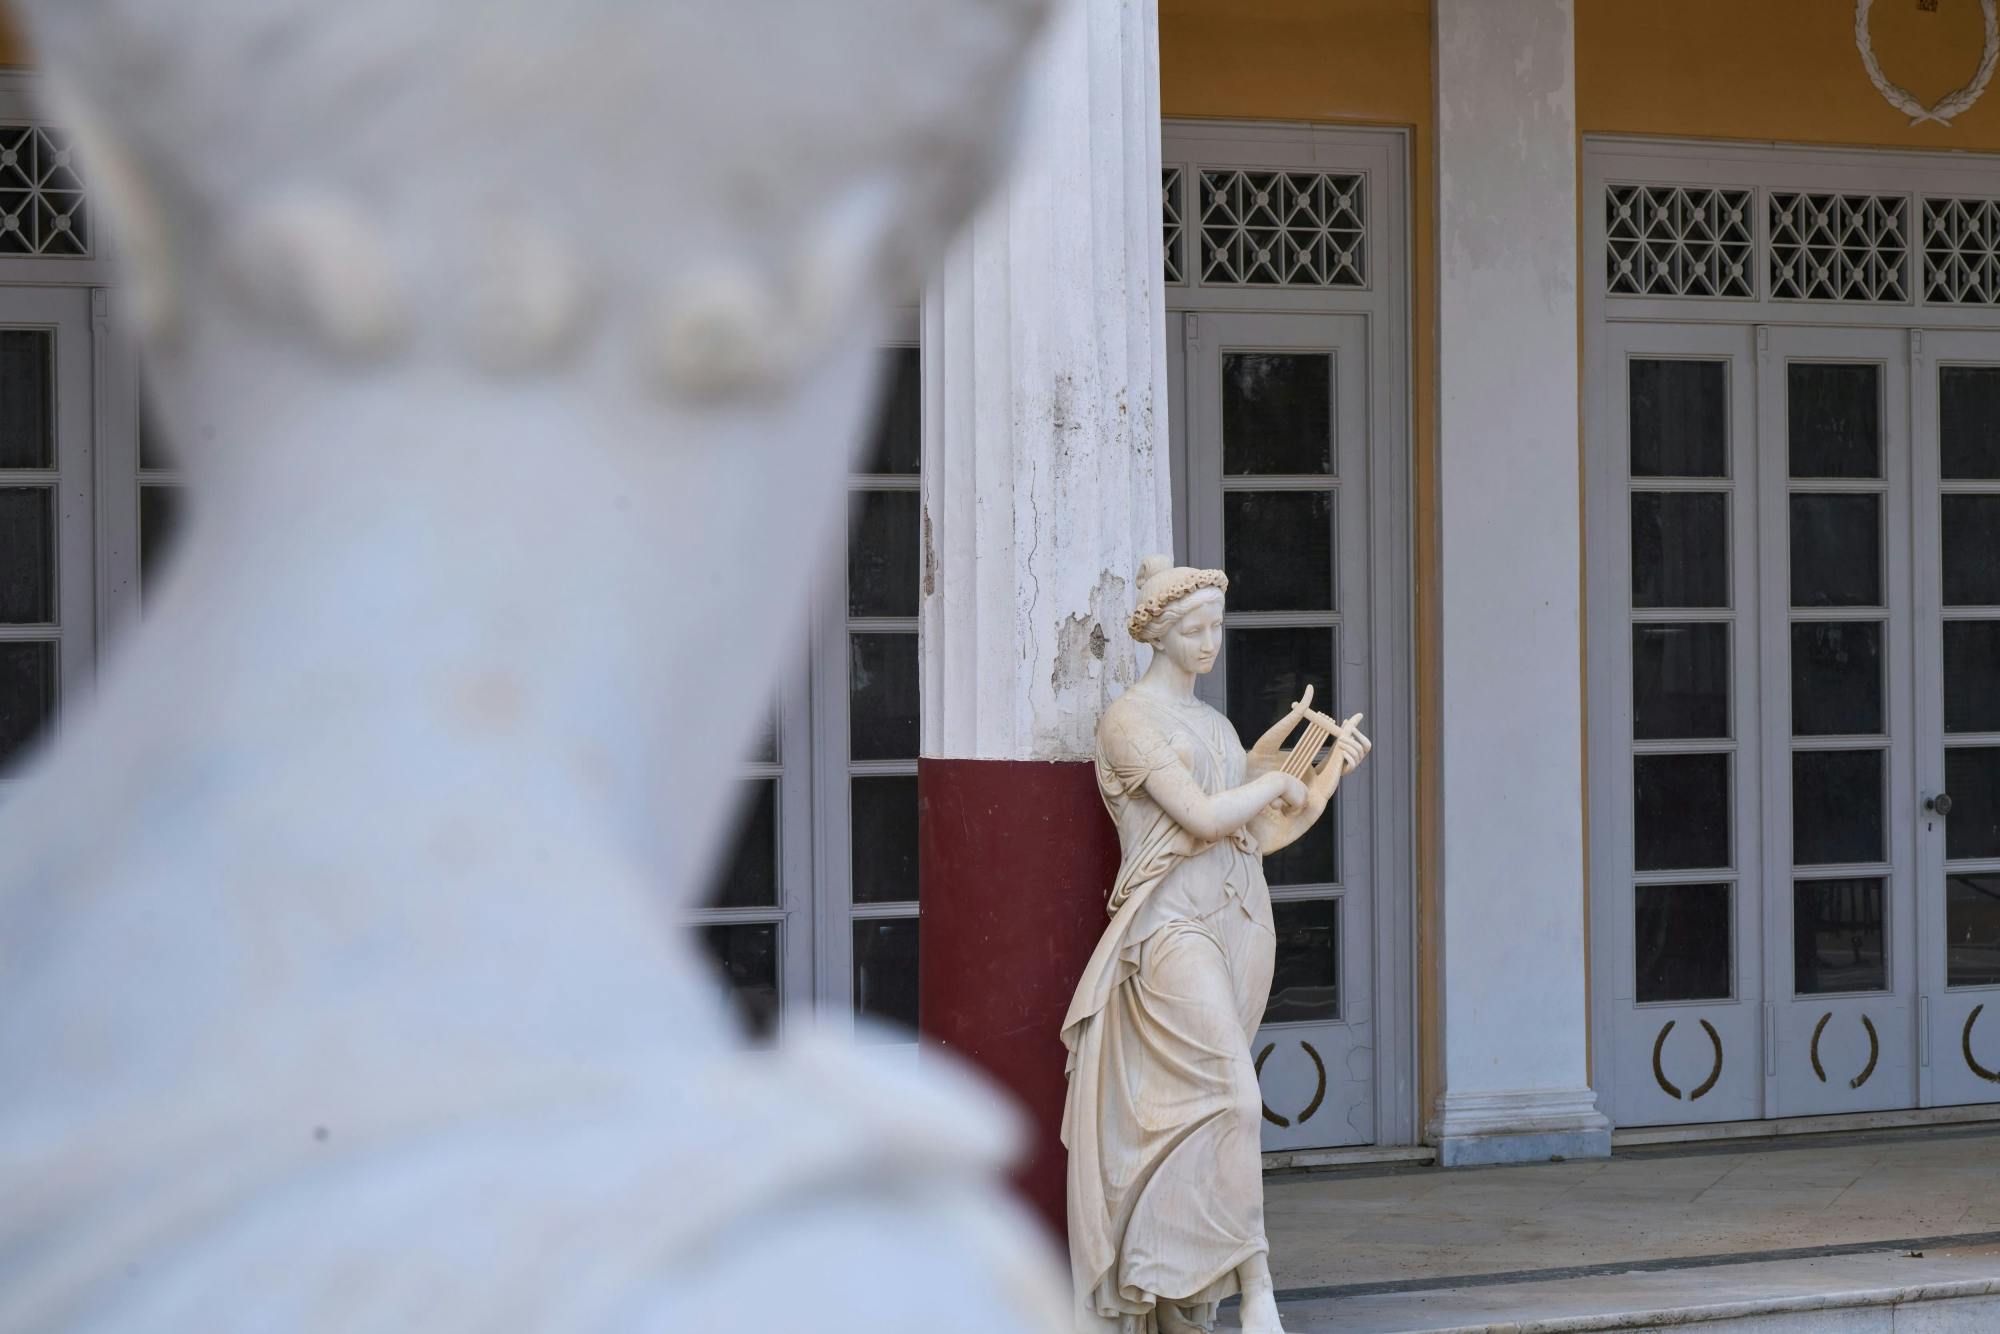 Corfu Tour with Achillion Palace and Paleokastritsa